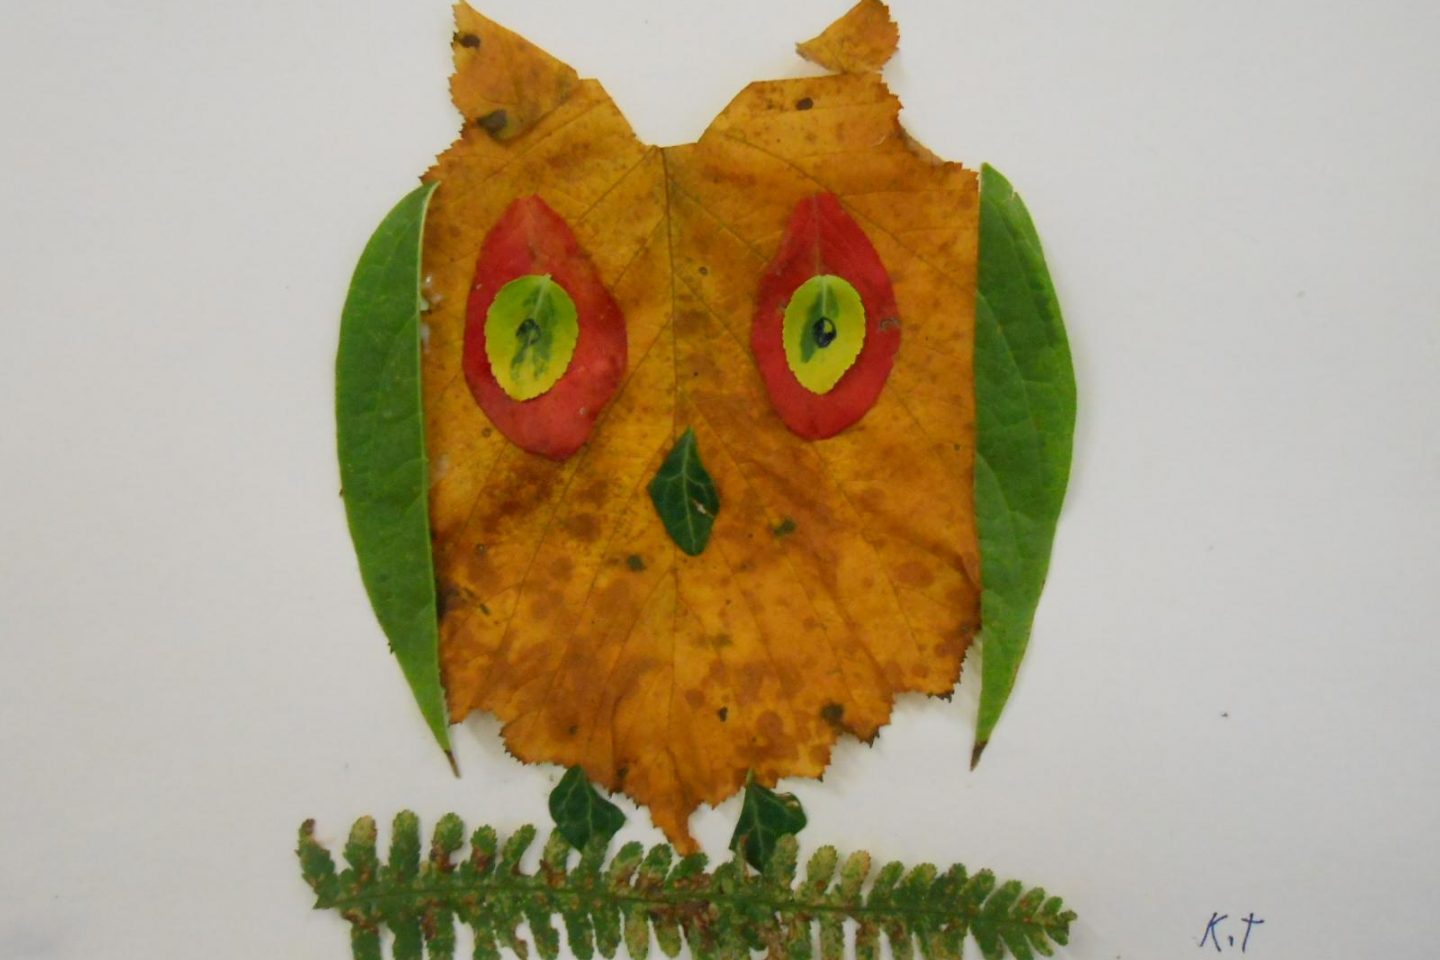 How to create leaf art - Thrive